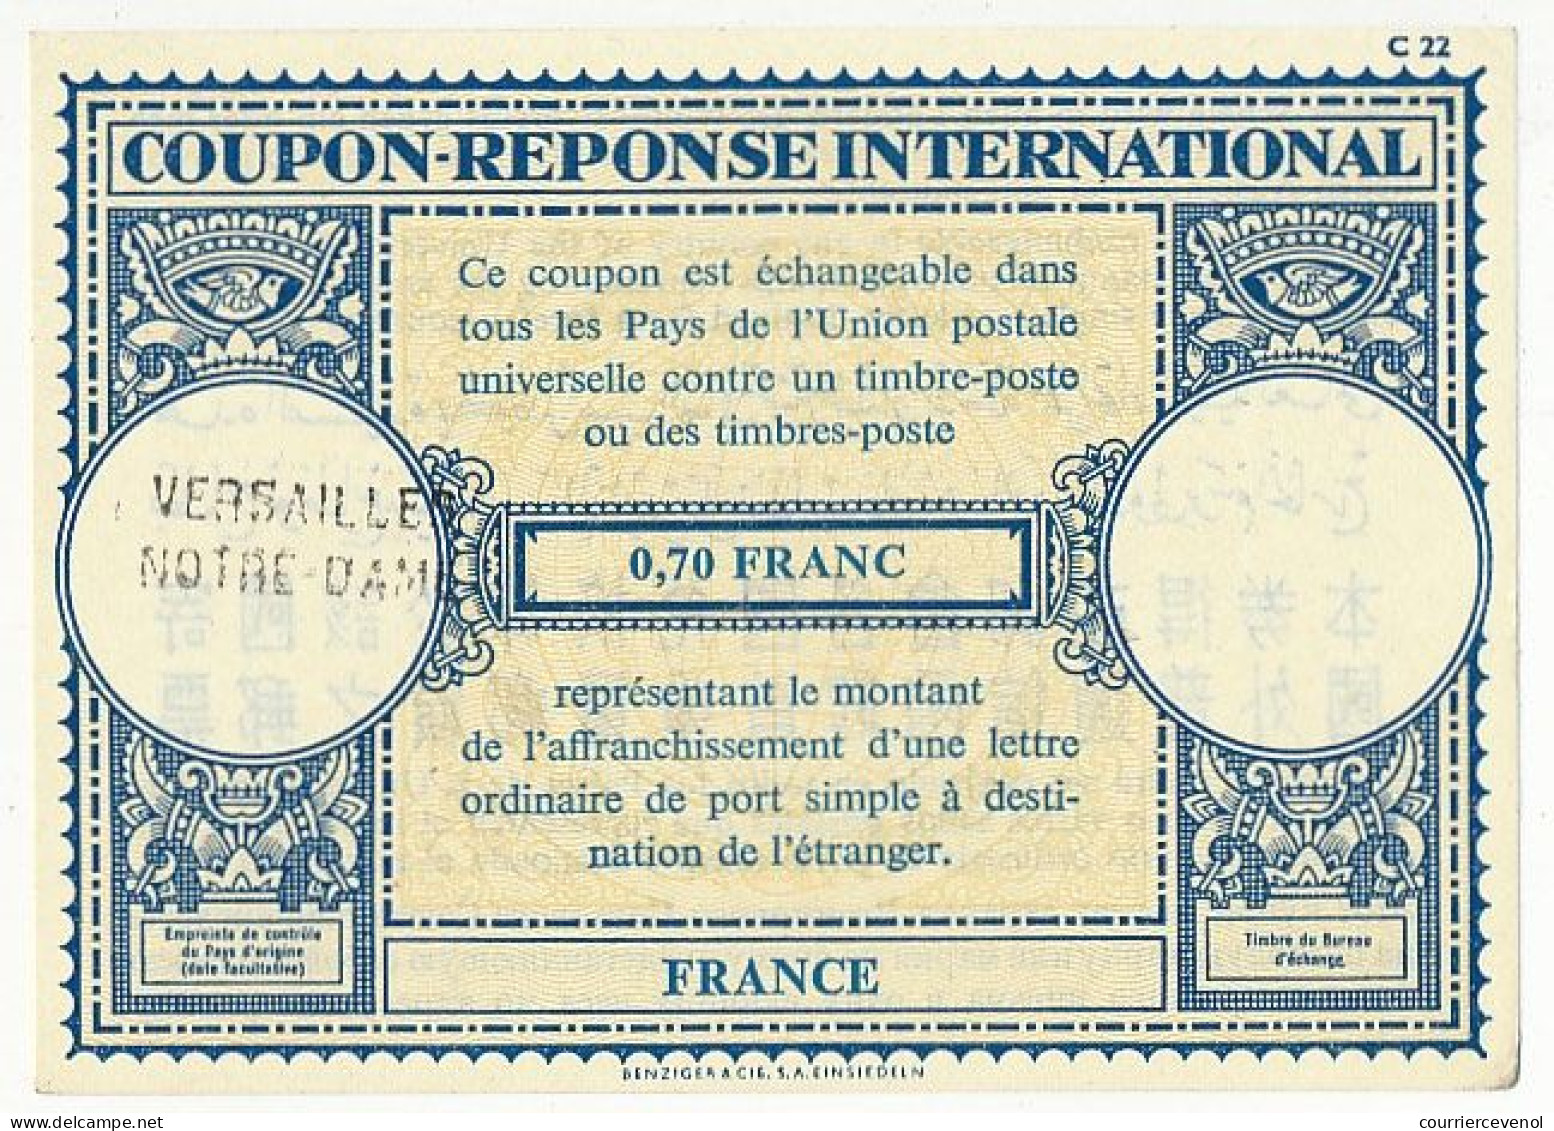 Coupon-Réponse International 0,70 Franc - Cachet Linéaire Versailles Notre Dame - Cupón-respuesta